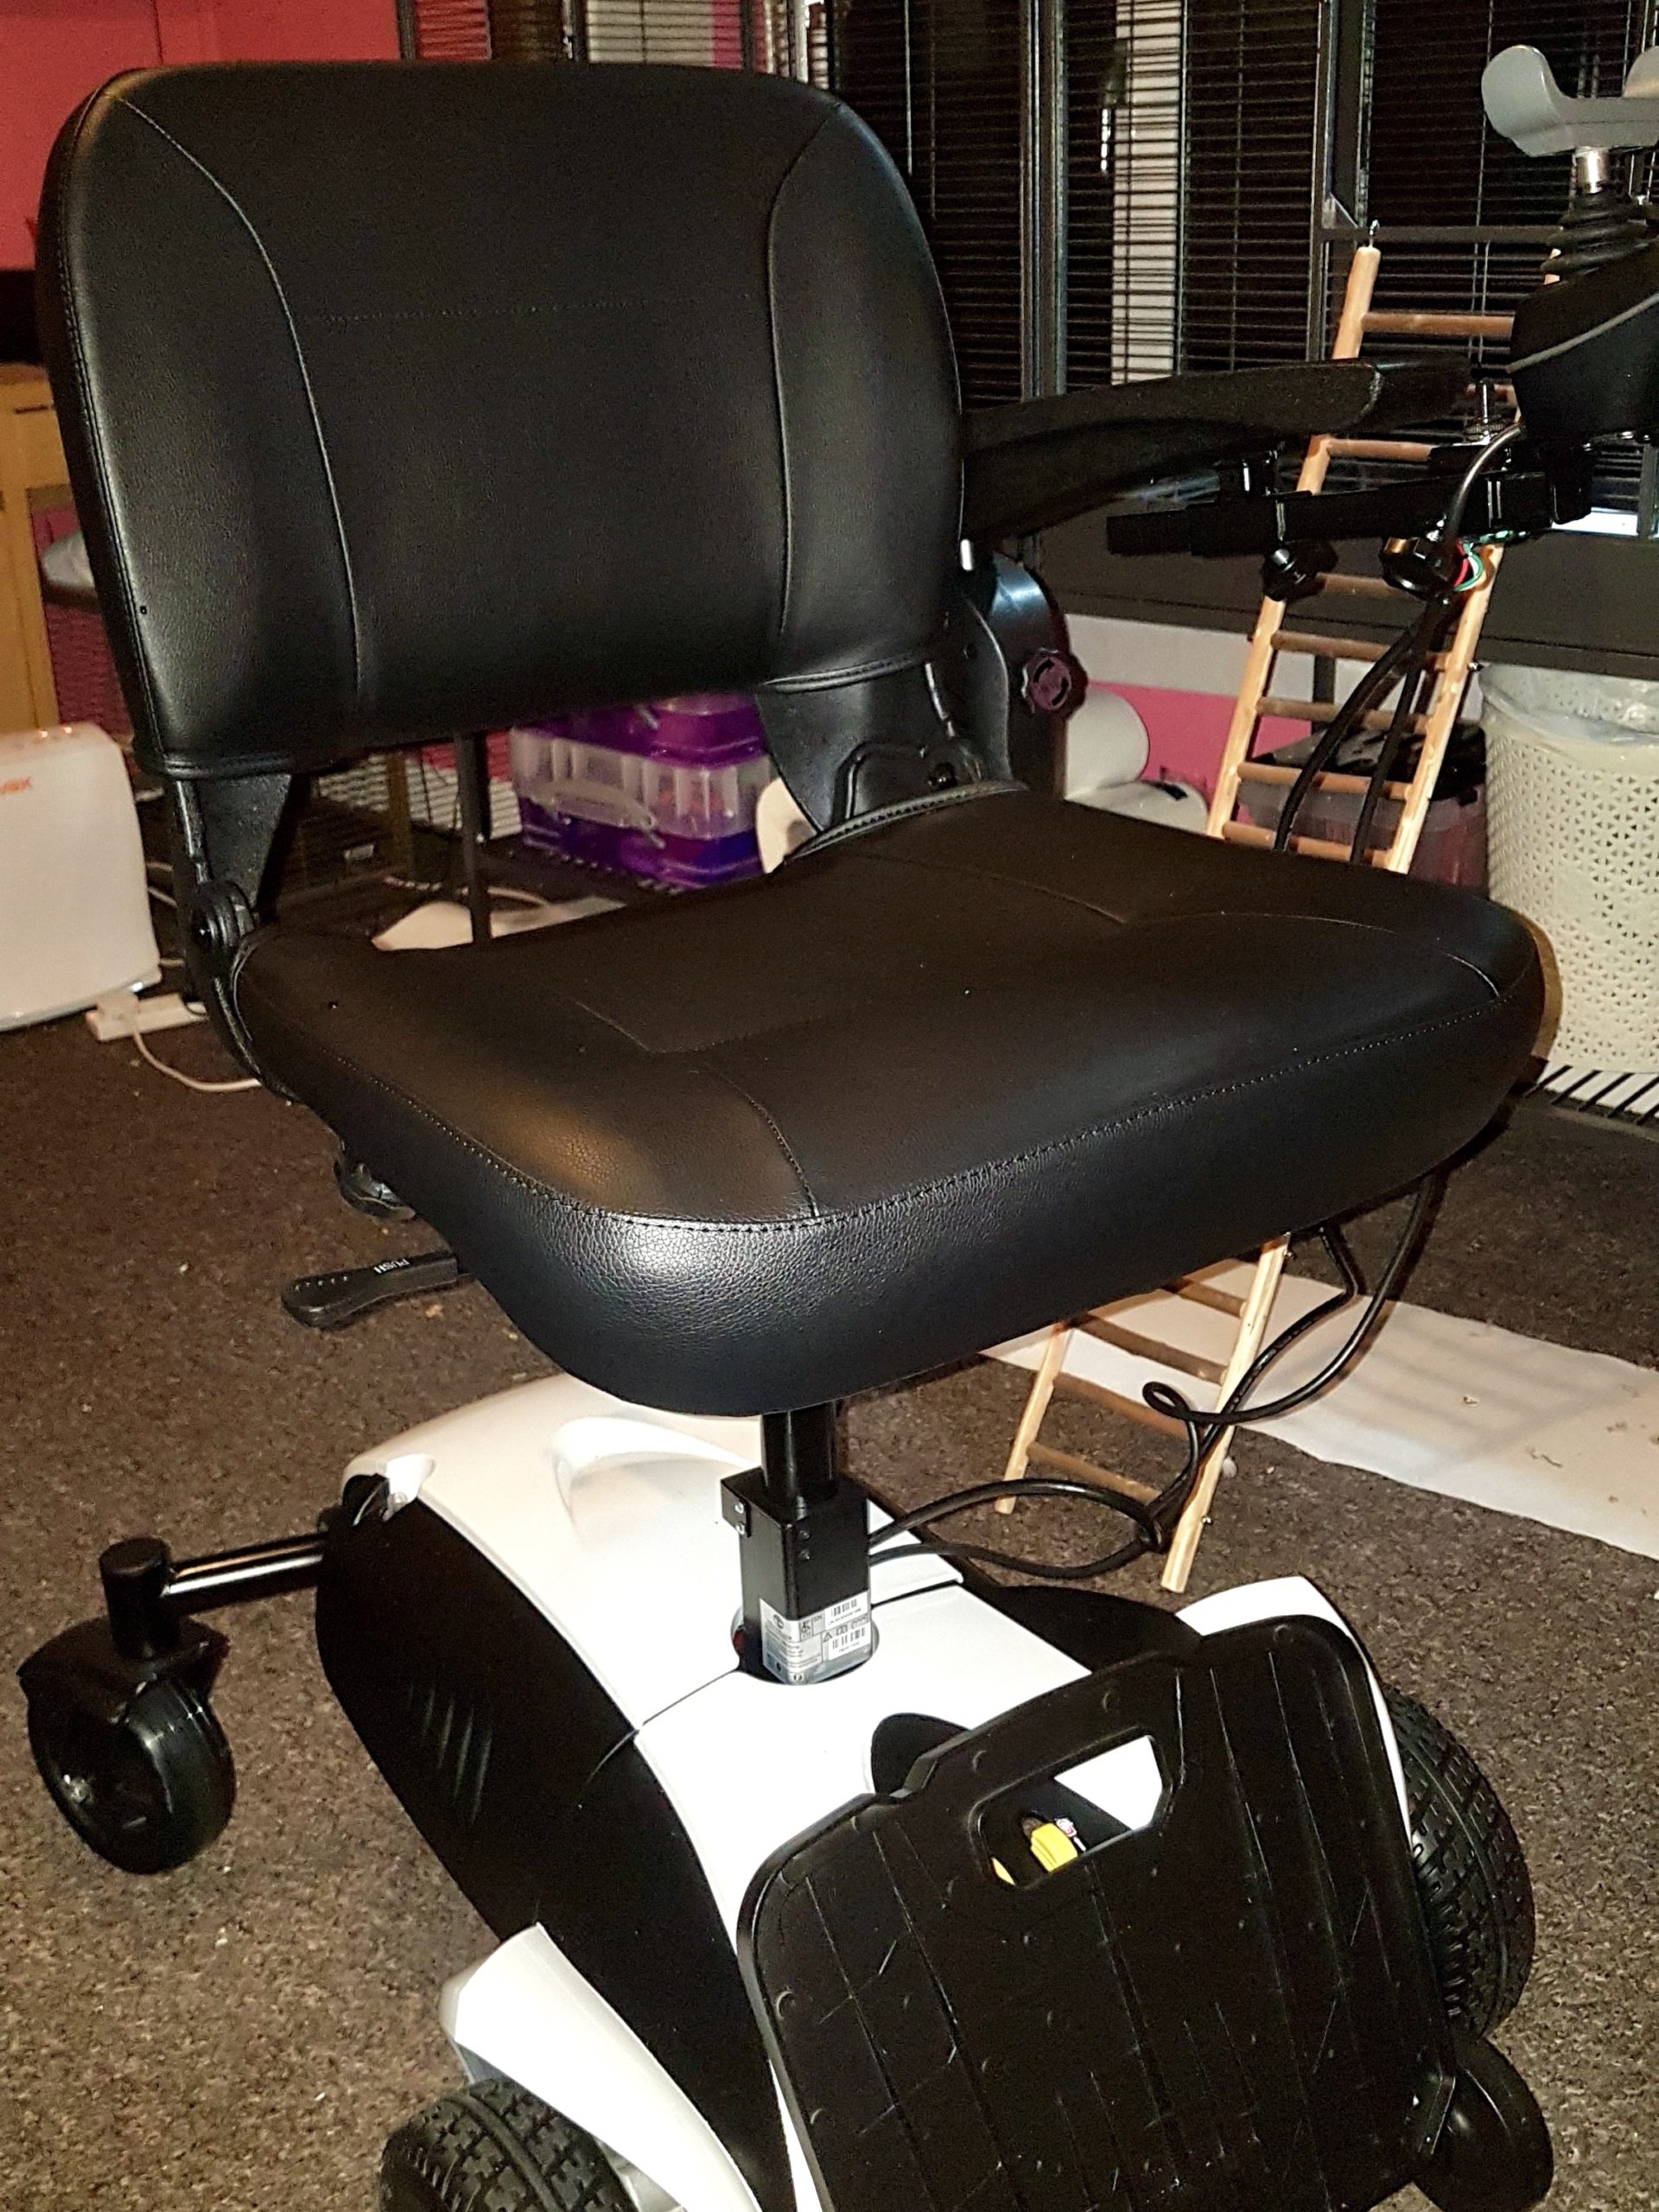 Travelux Venture – Powered Wheelchair